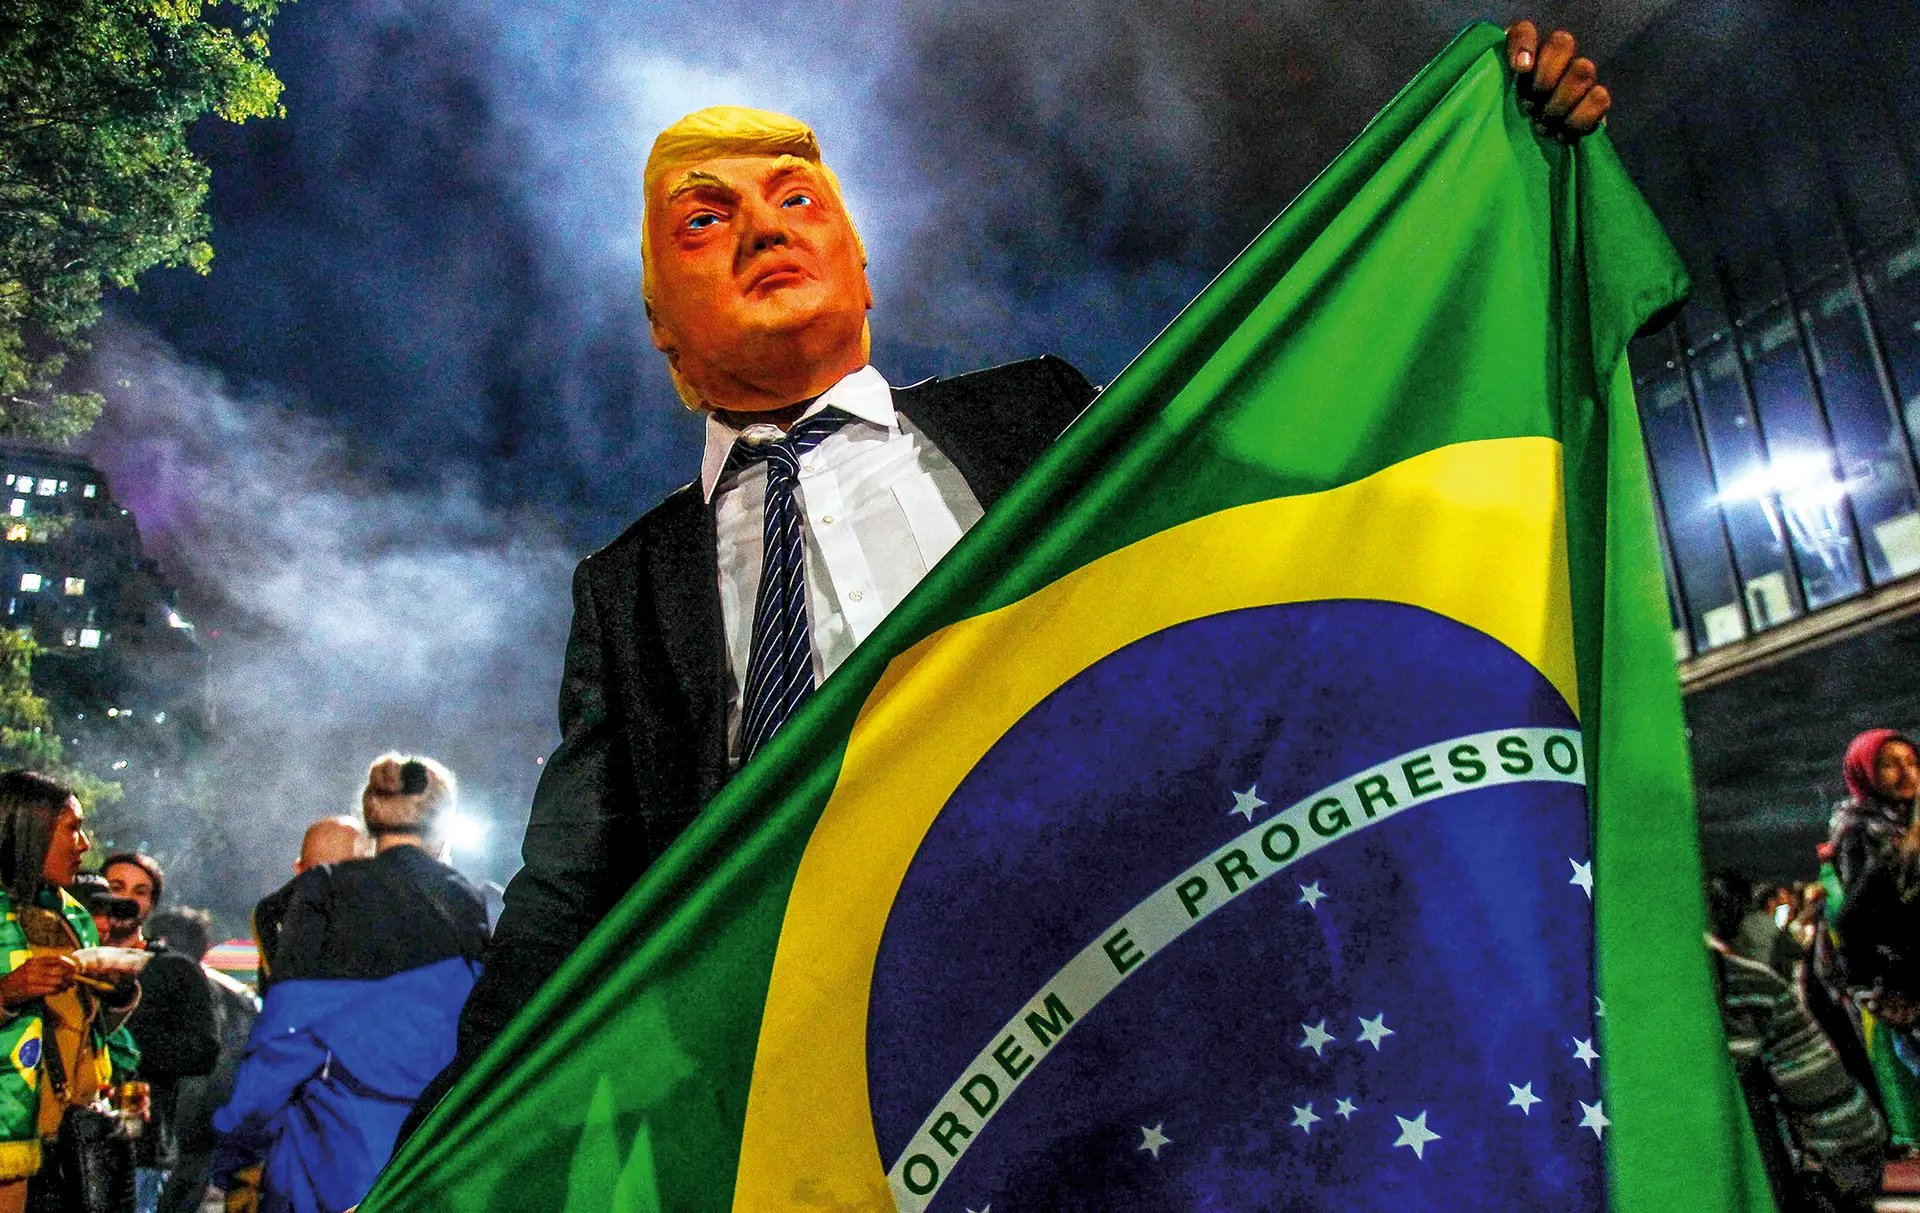 Apoiante de Jair Bolsonaro disfarçado de Donald Trump durante uma campanha eleitoral FOTO MIGUEL SCHINCARIOL/AFP/GETTY IMAGES